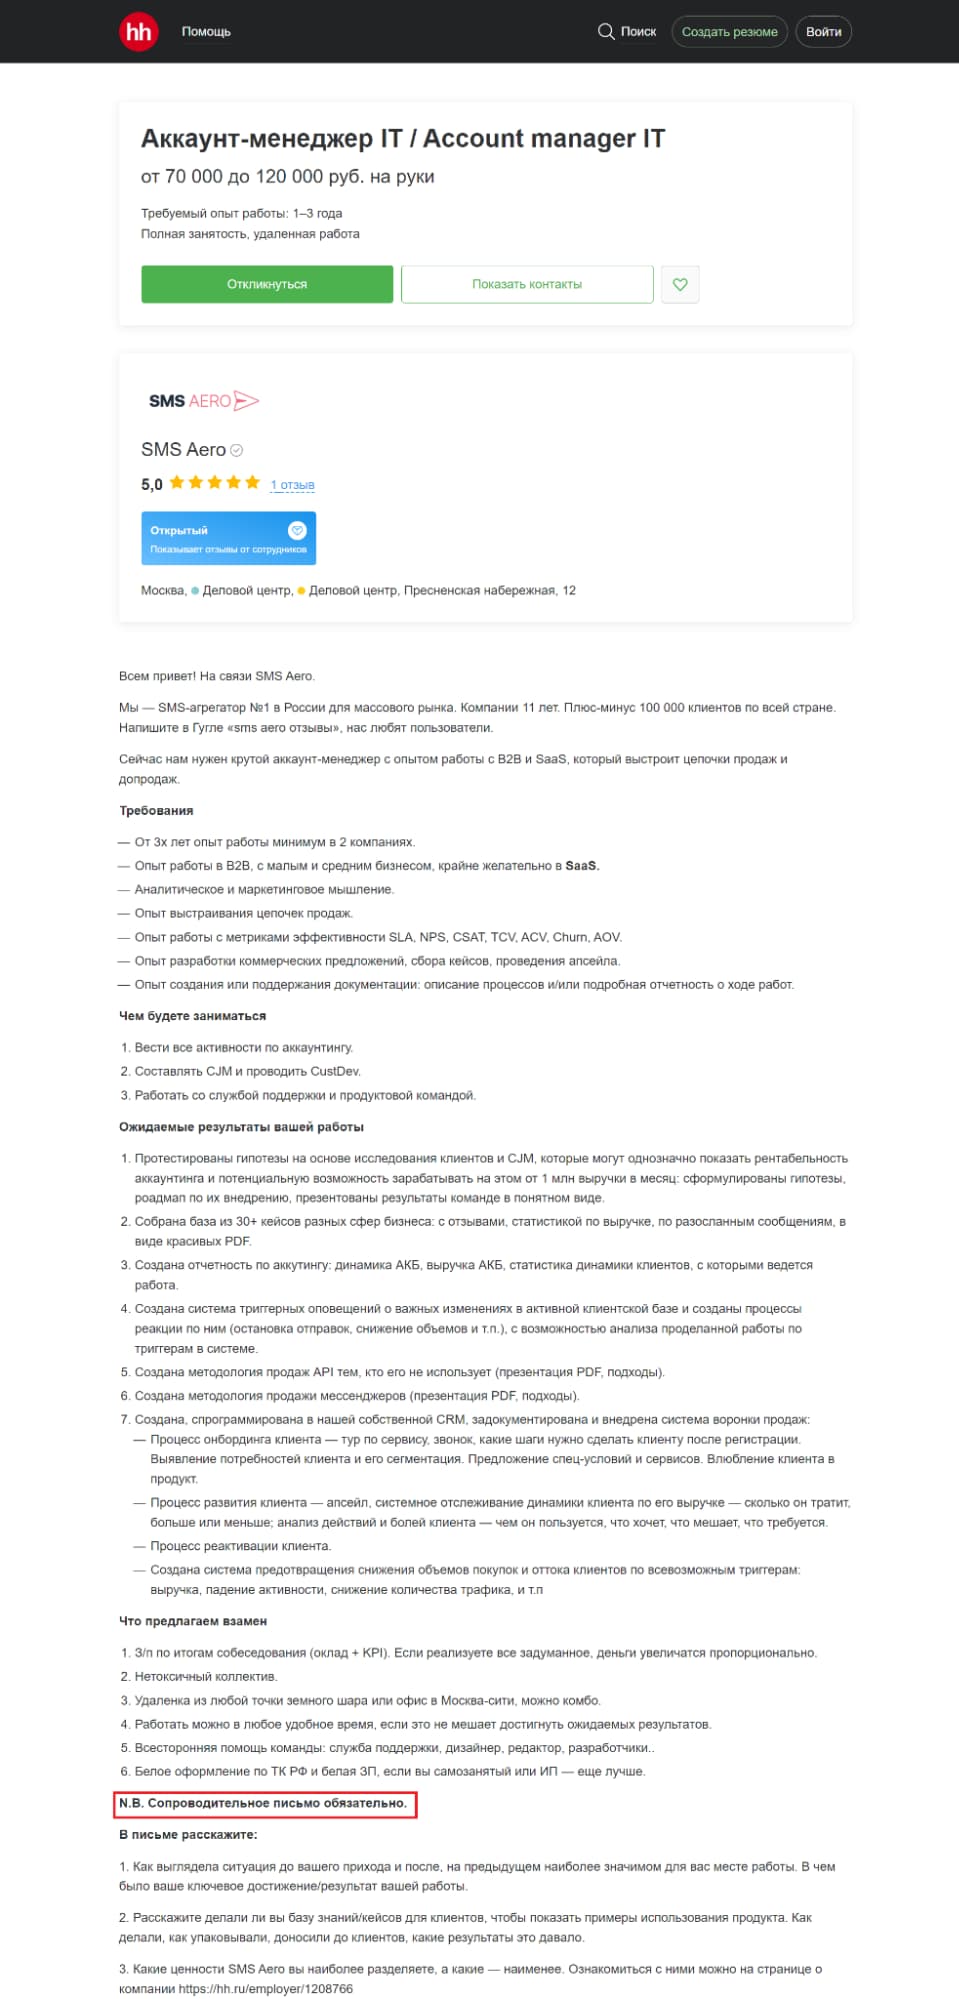 К тому же иногда работодатели сами в требованиях указывают наличие сопроводительного письма — как в этой вакансии на hh.ru: